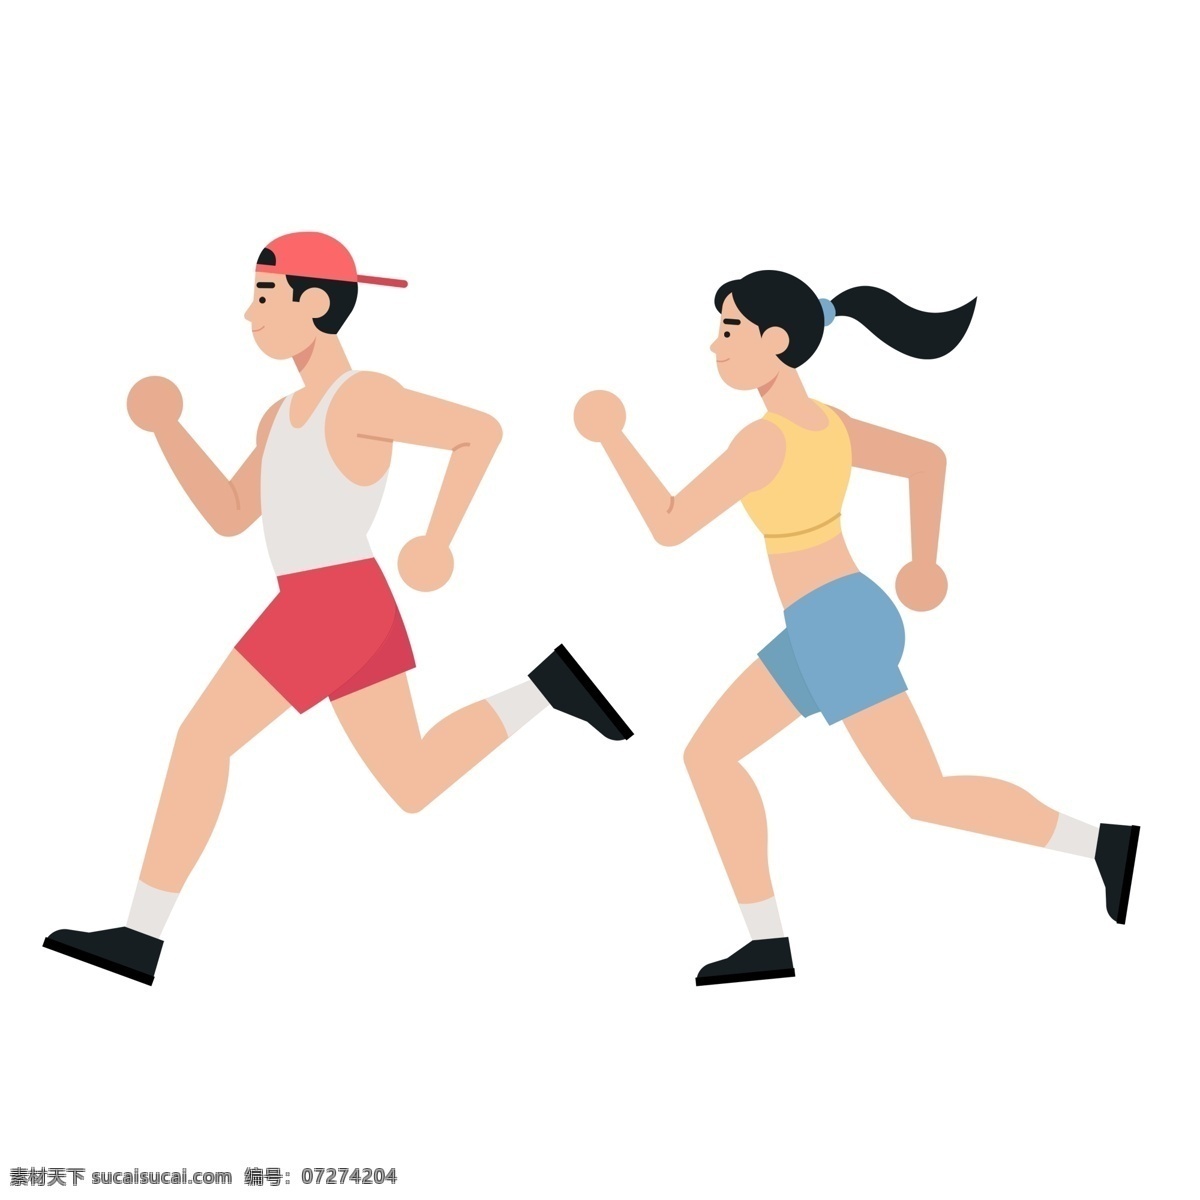 运动 健身 跑步 人物 运动的人物 健身的人物 跑步的人物 可爱的人物 扁平化人物 插画人物 banner